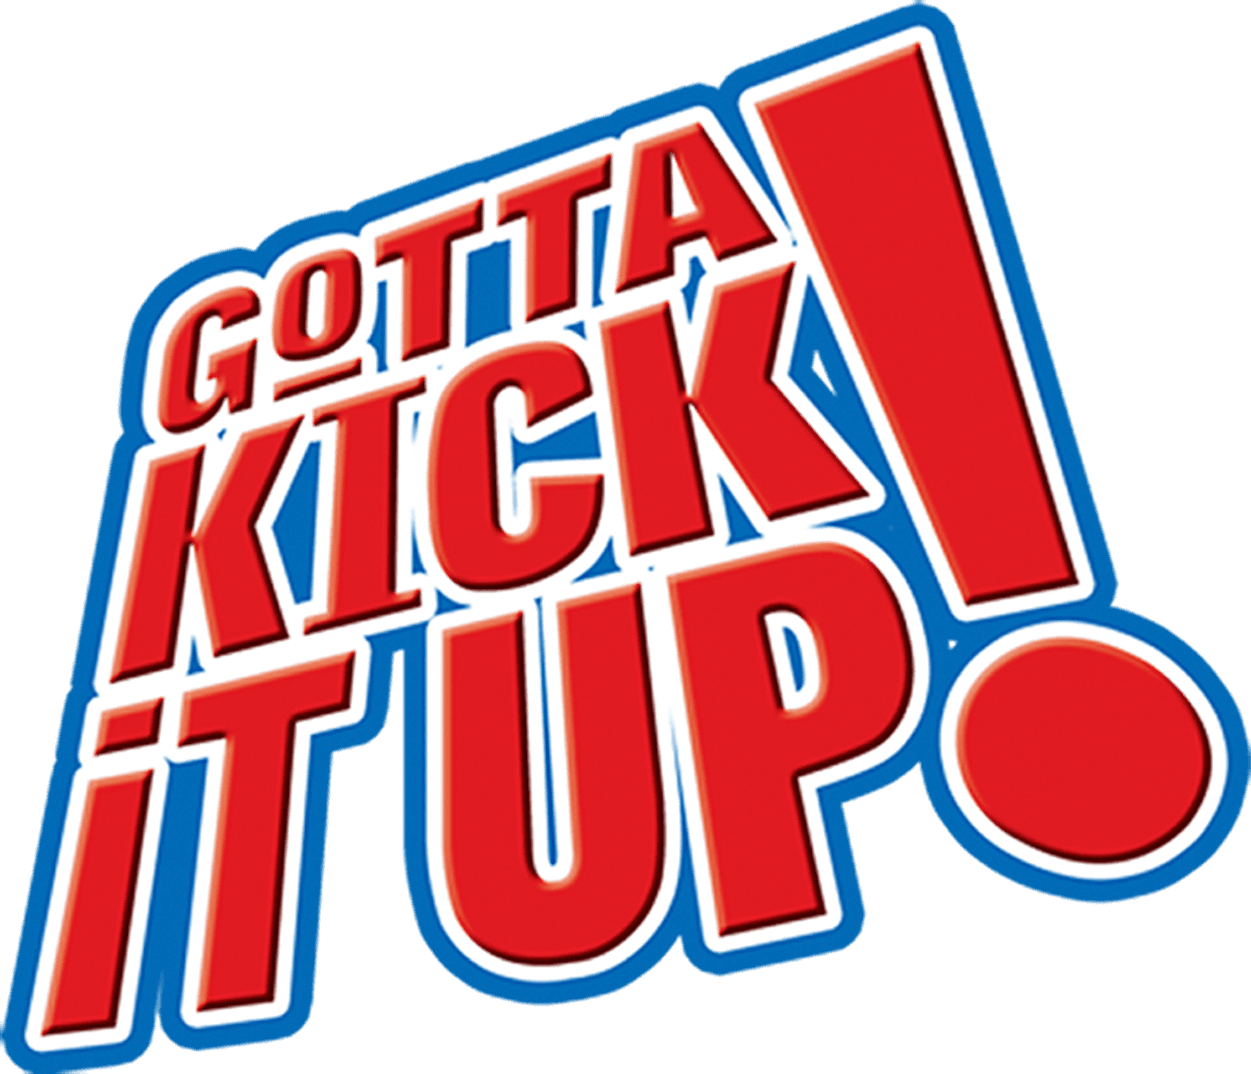 Gotta Kick It Up! logo